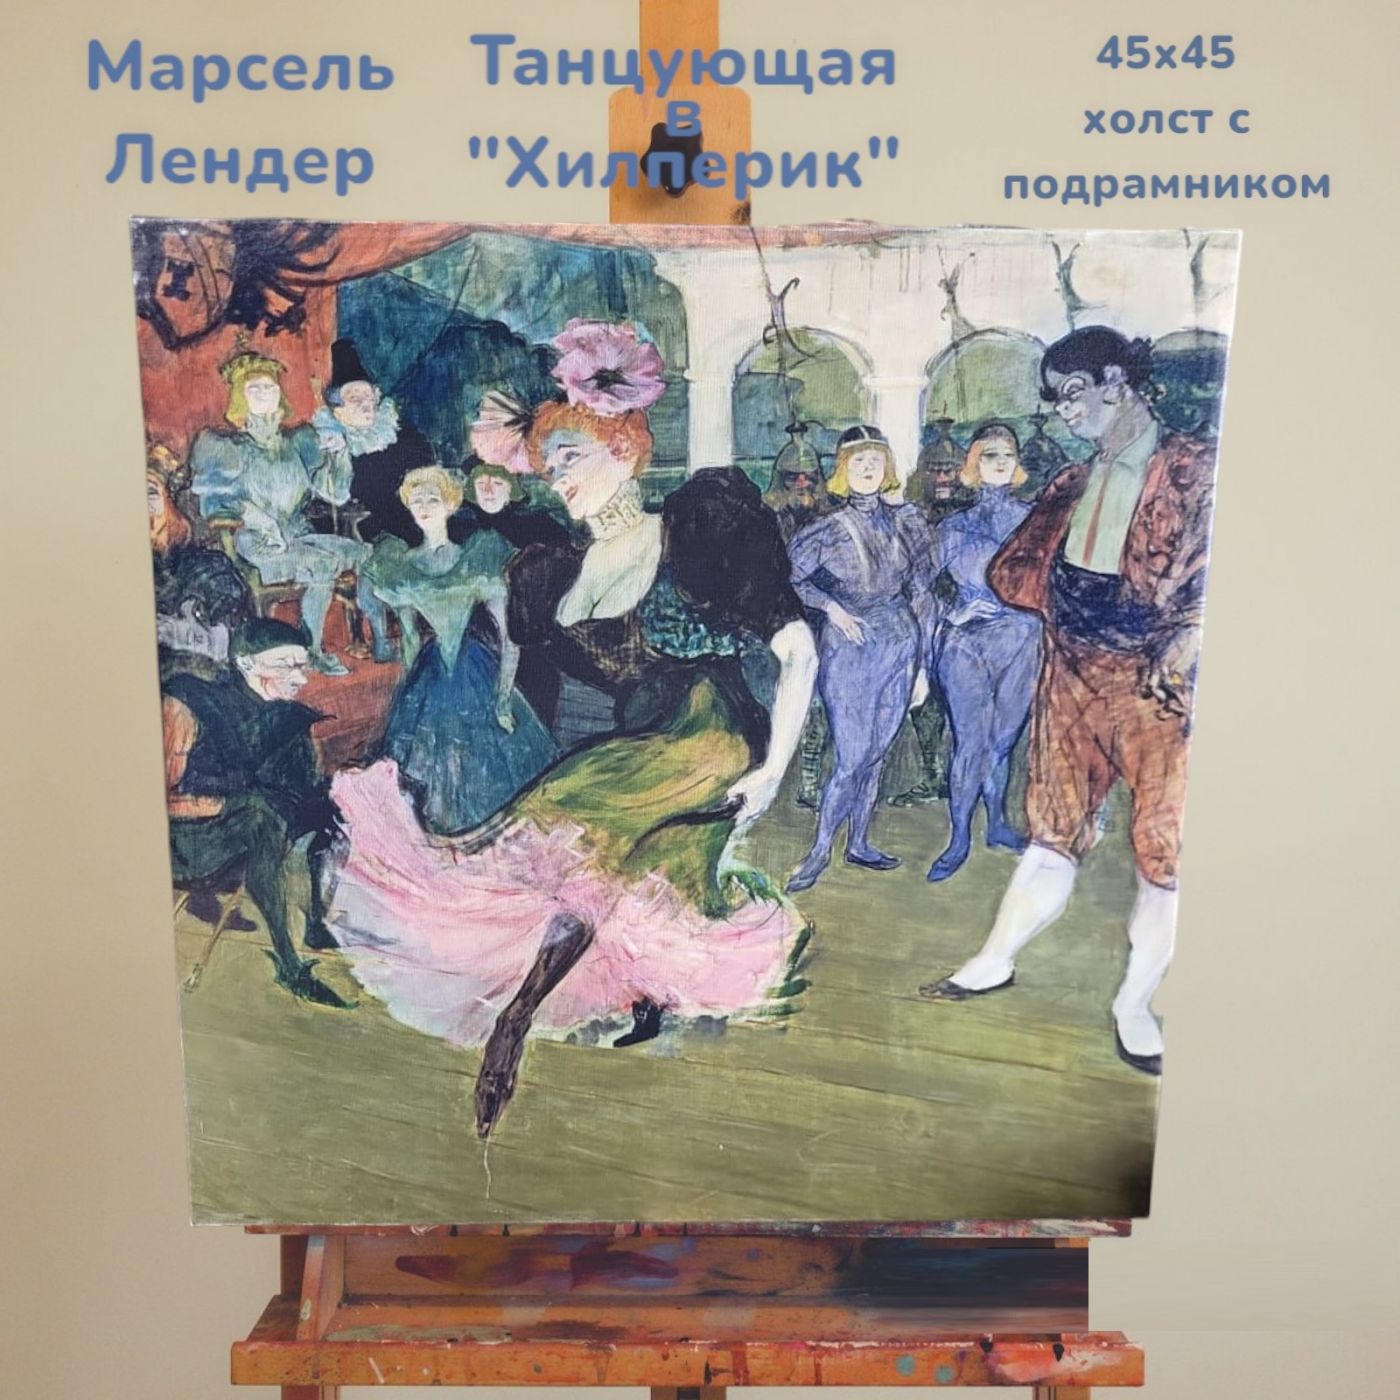 Холст с подрамником репродукция картины Марселя Лендера "Танцующая в Хильперик" 45х45